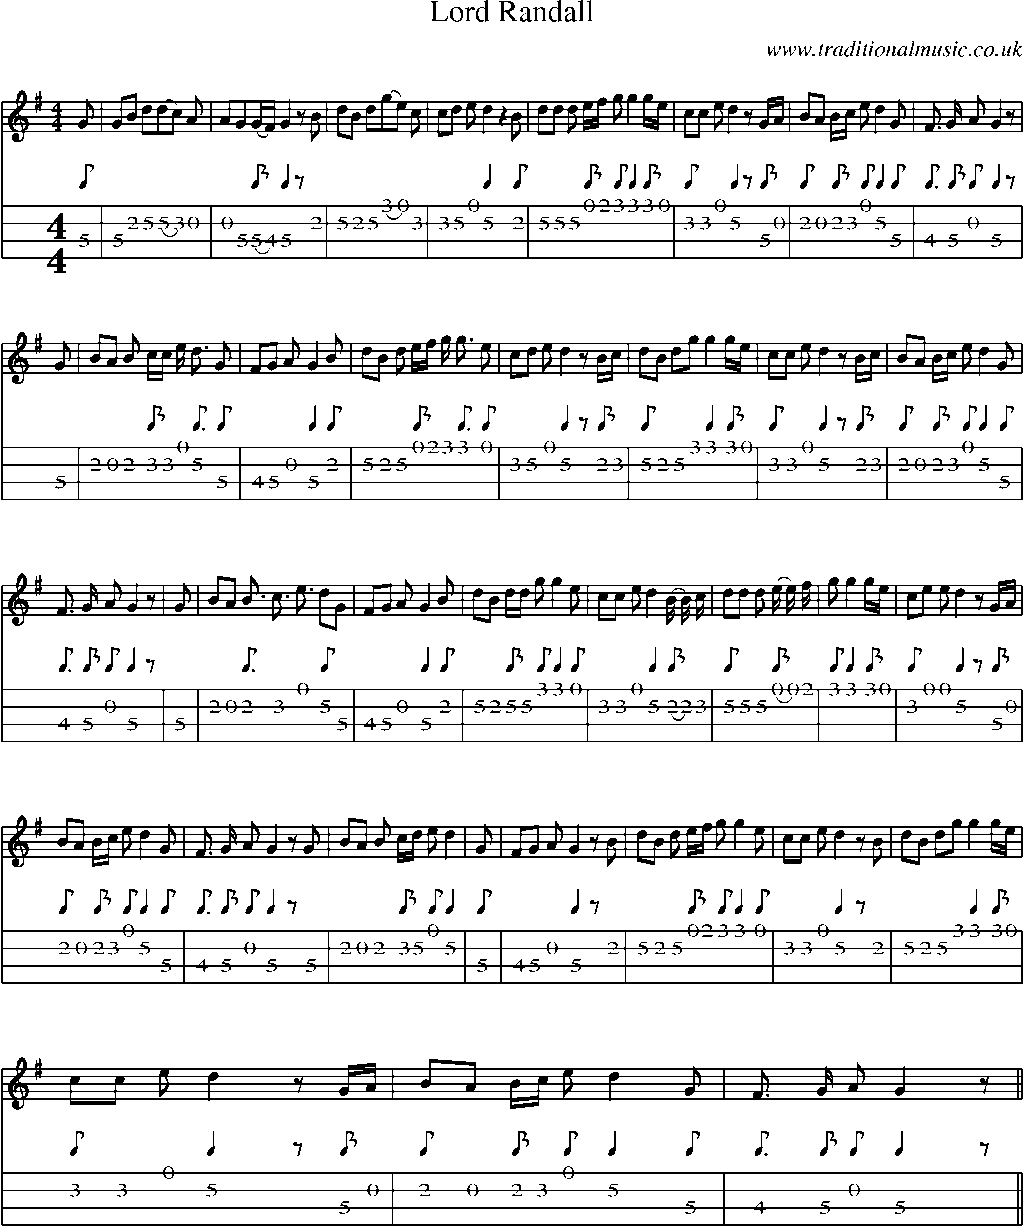 Mandolin Tab and Sheet Music for Lord Randall(7)